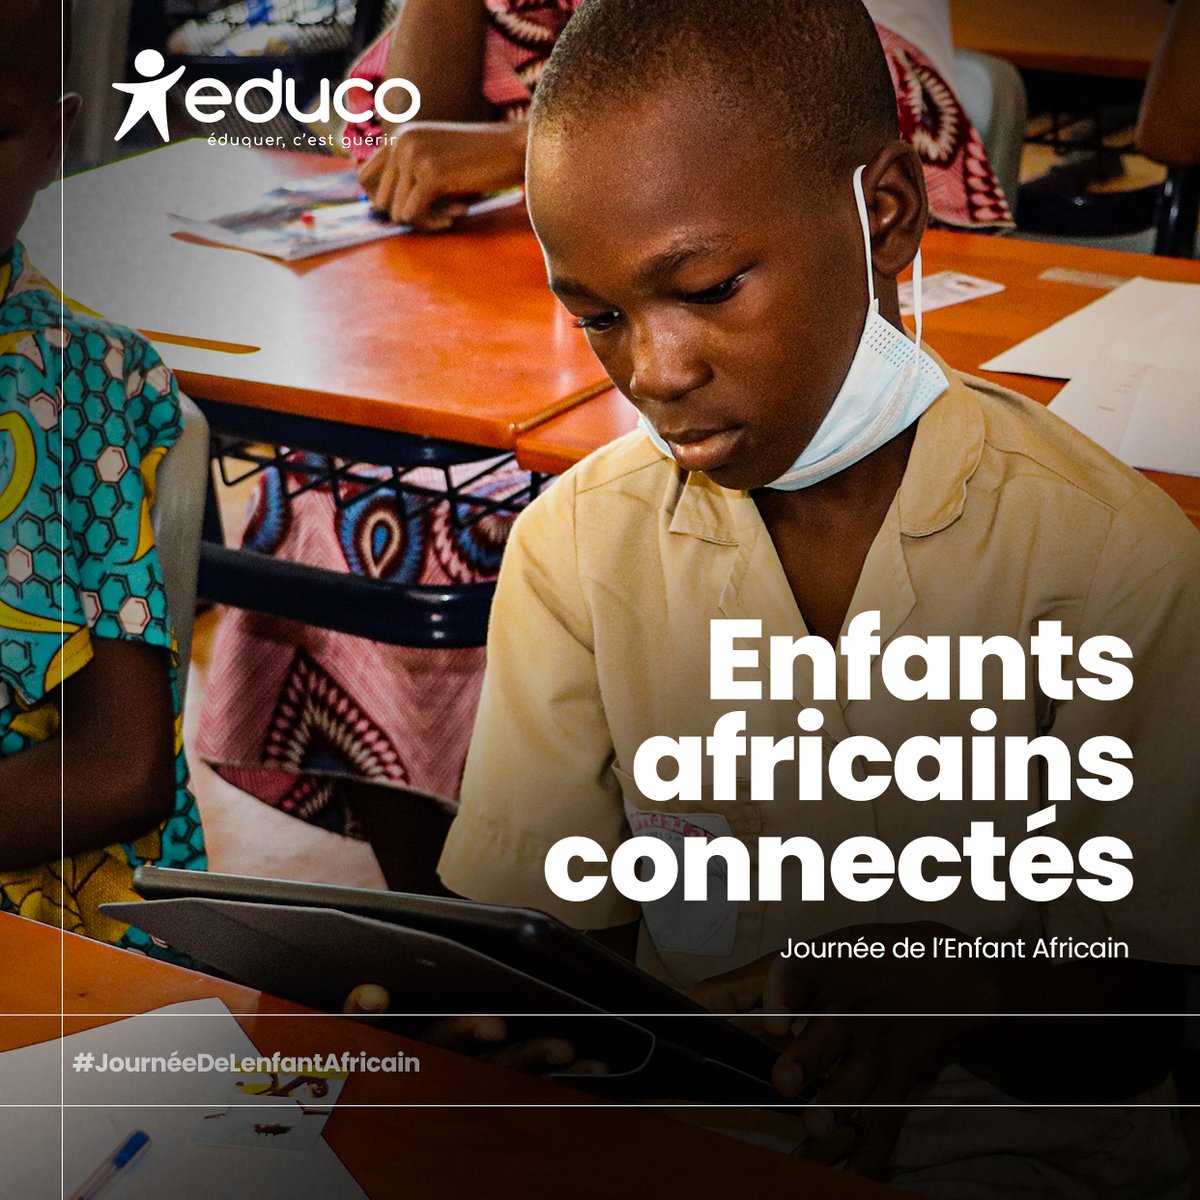 En cette Journée de l'Enfant Africain, assurons un accès sûr à l'environnement numérique. Ensemble, créons un avenir où tous les enfants africains s'épanouissent et réalisent leur plein potentiel. 
#educo #eduquercestguerir #JME2023 #ProtectionEnLigne